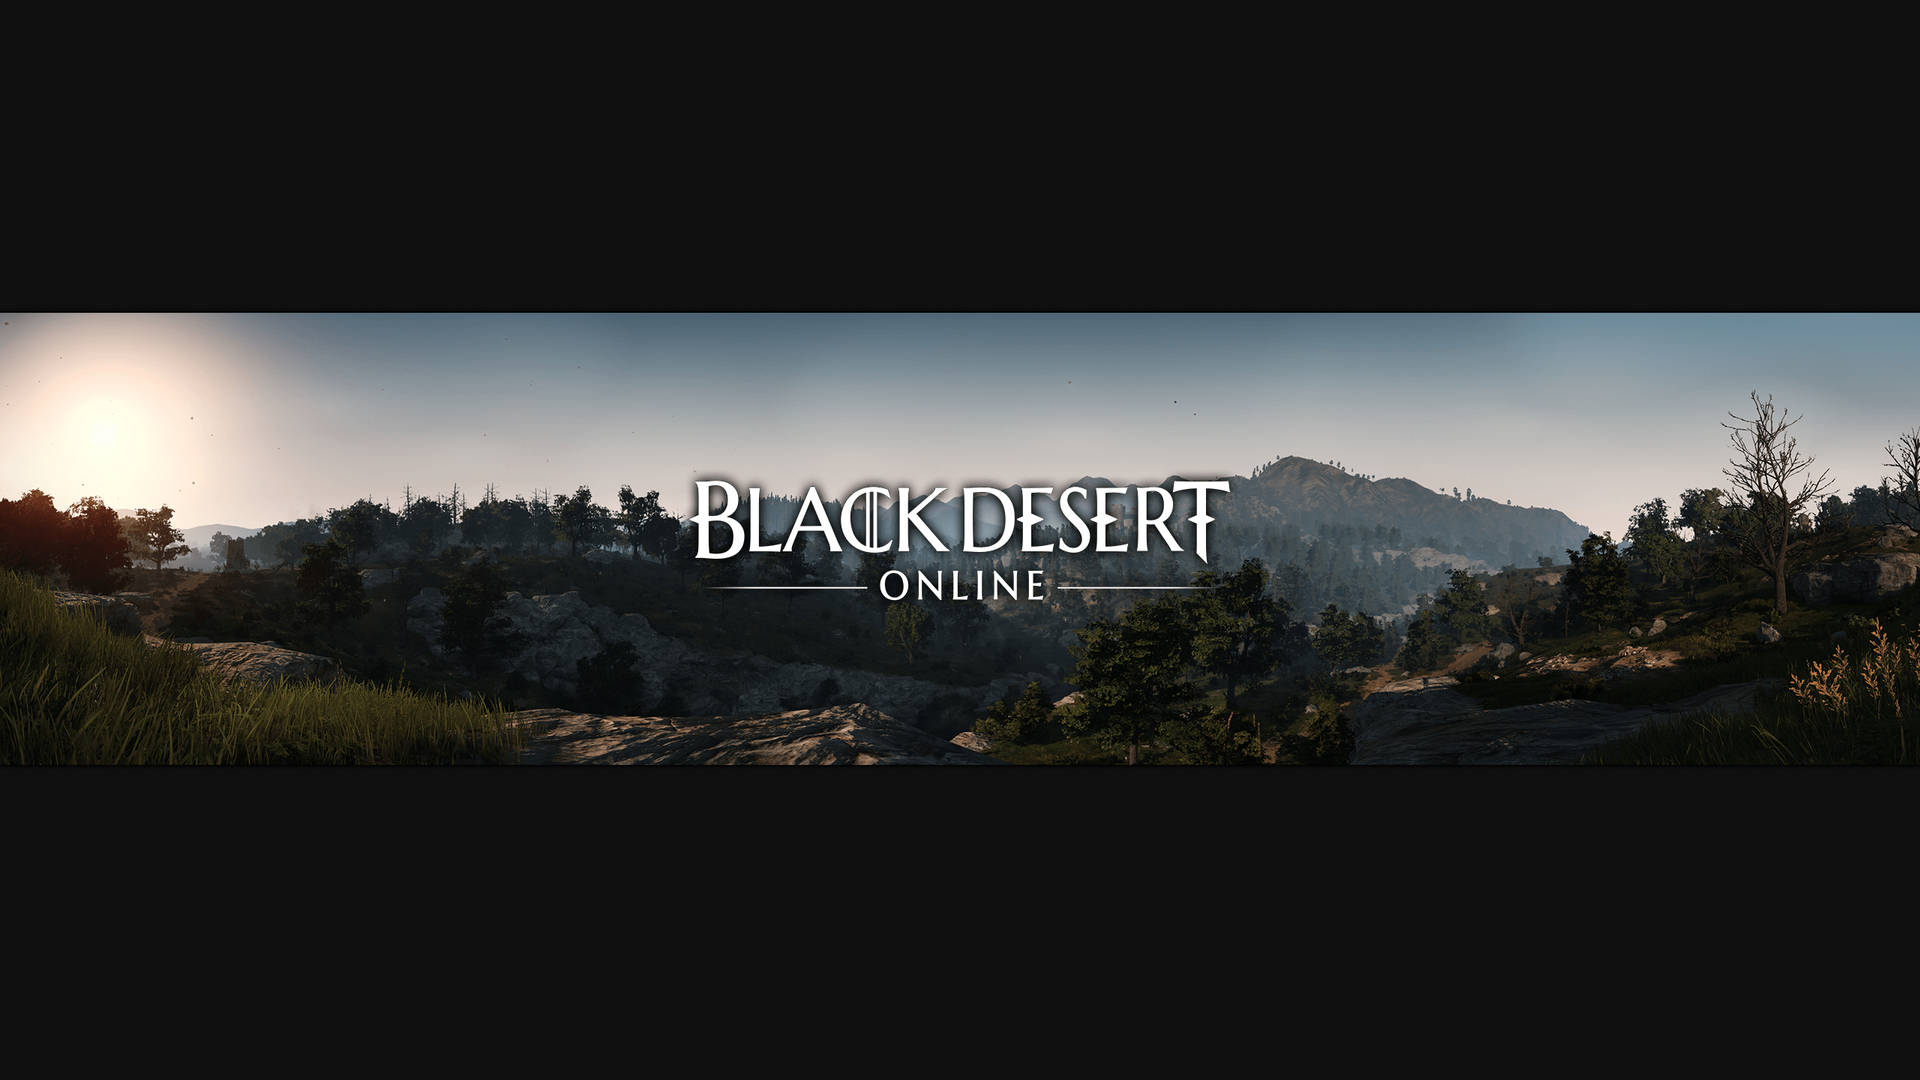 Posterlogo Für Black Desert Online Wallpaper